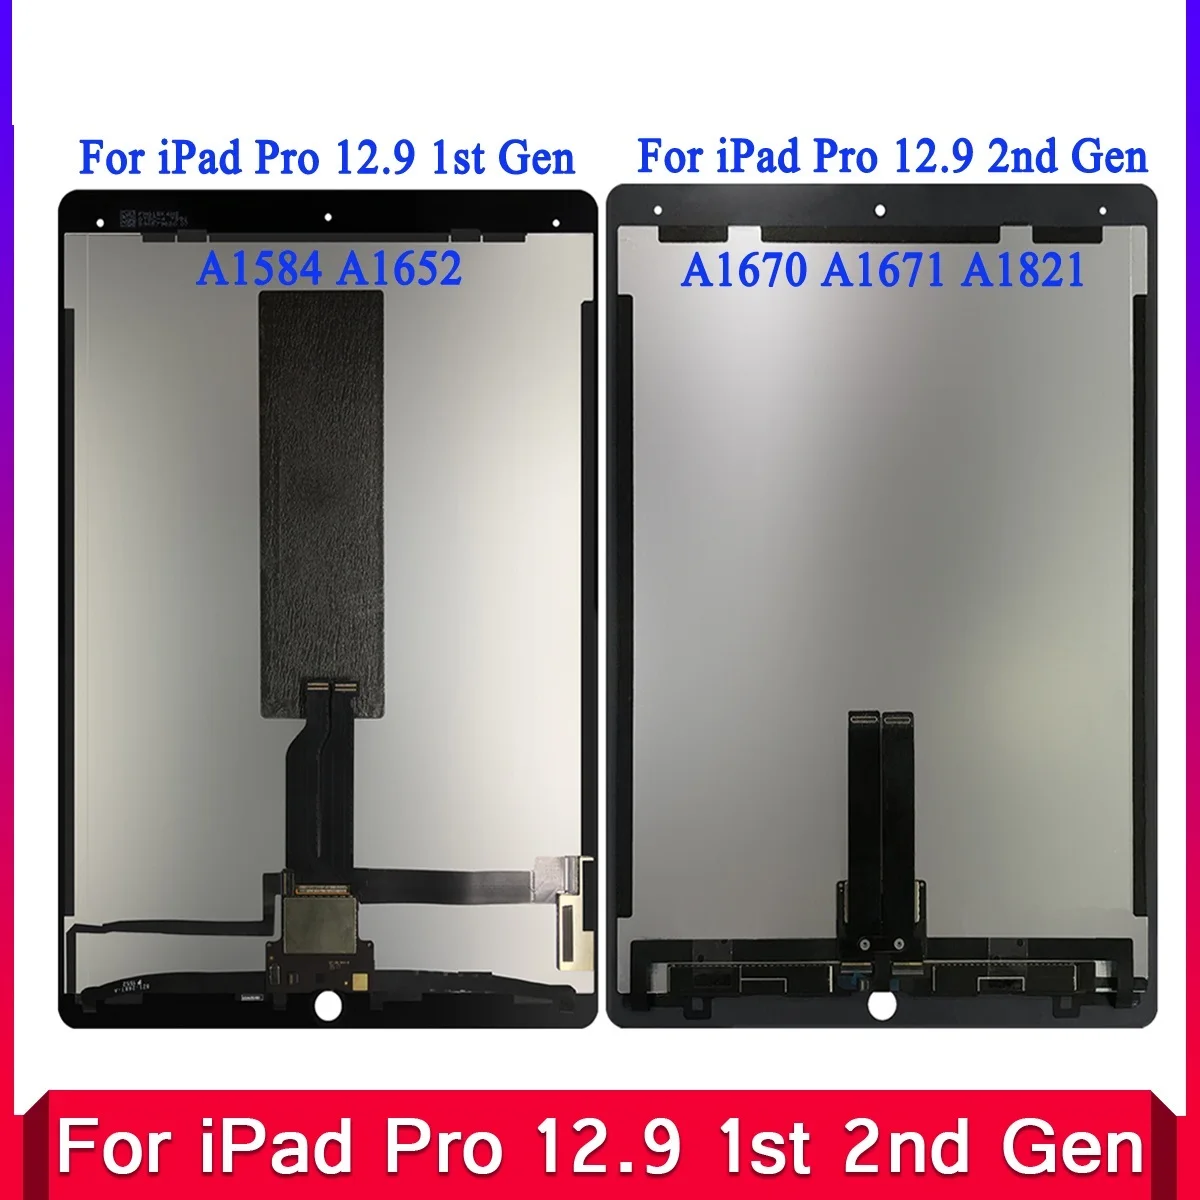 

2023 Новый ЖК-дисплей для iPad Pro 12,9 1-го поколения A1584 A1652 для Pro 12,9 2-го поколения A1670 A1671 A1821 протестированный дисплей сенсорный экран в сборе